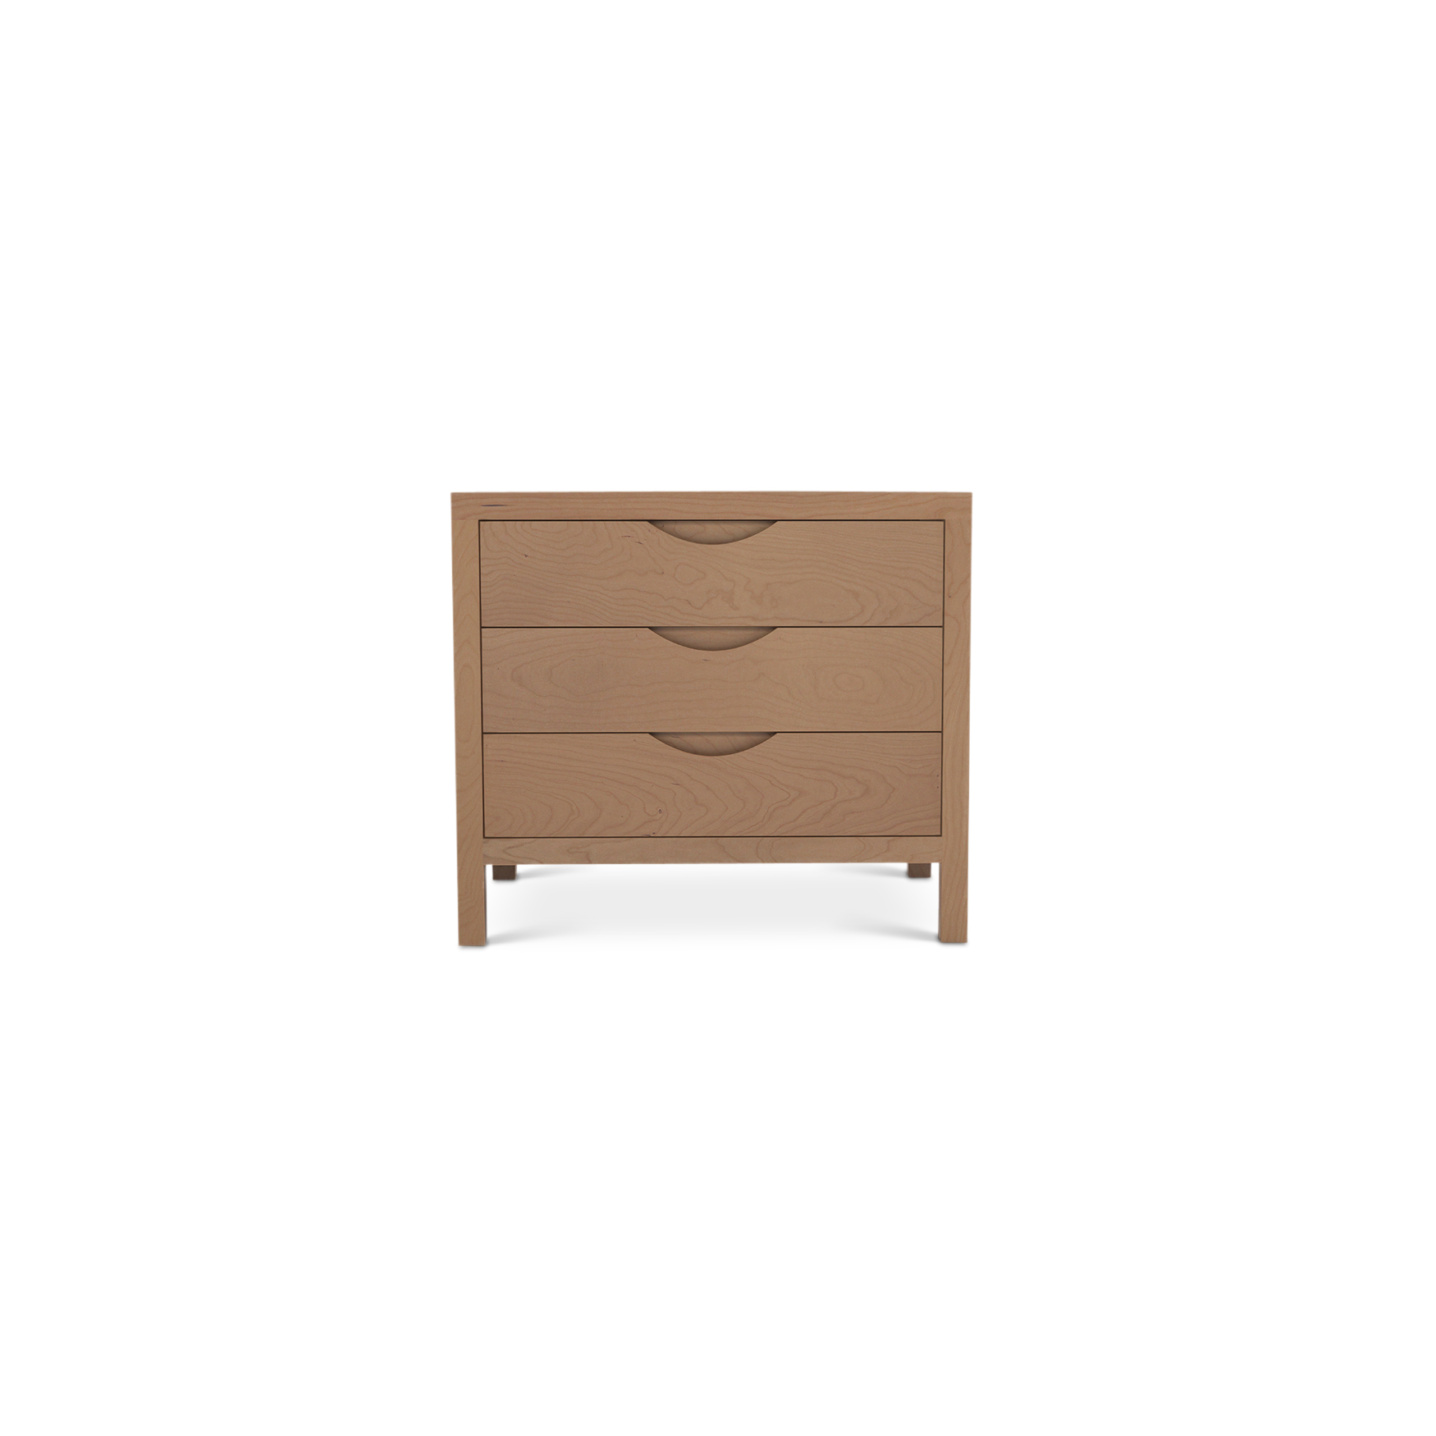 Three drawer cherry wood modern Danish nightstand